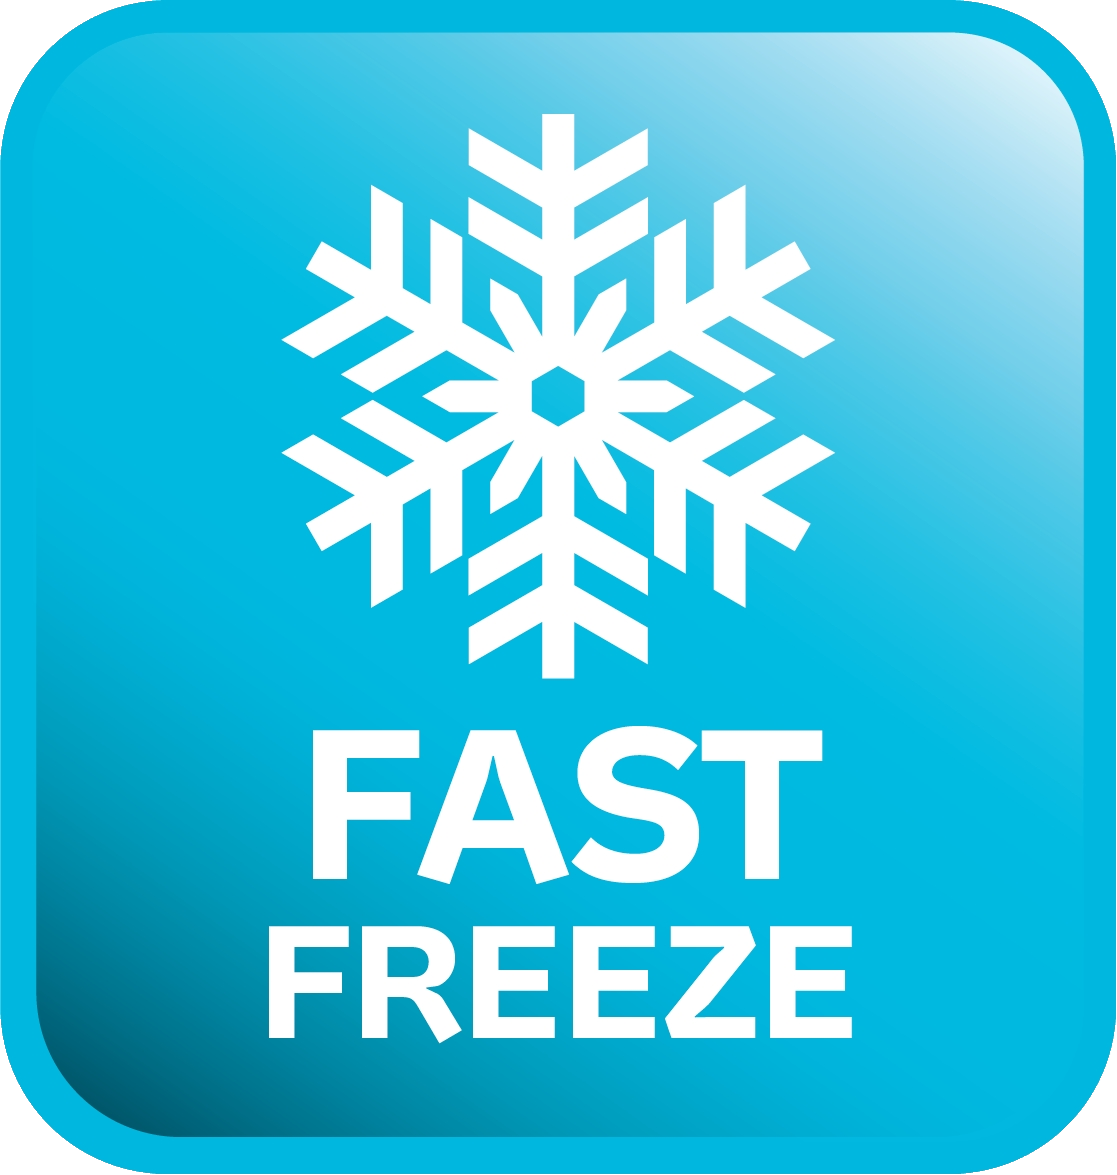 Fast frozen